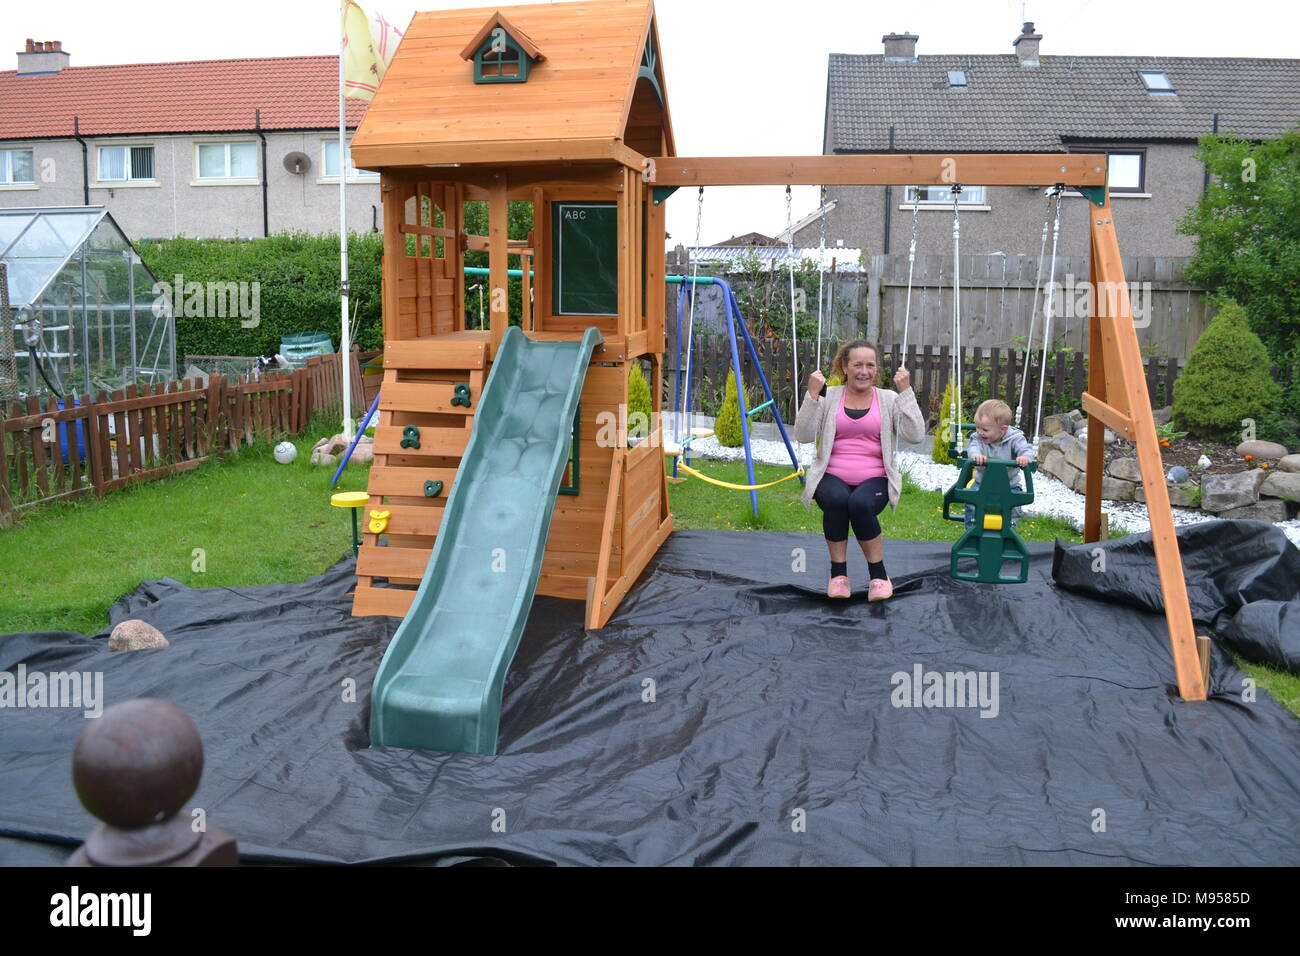 children's garden swings and climbing frames